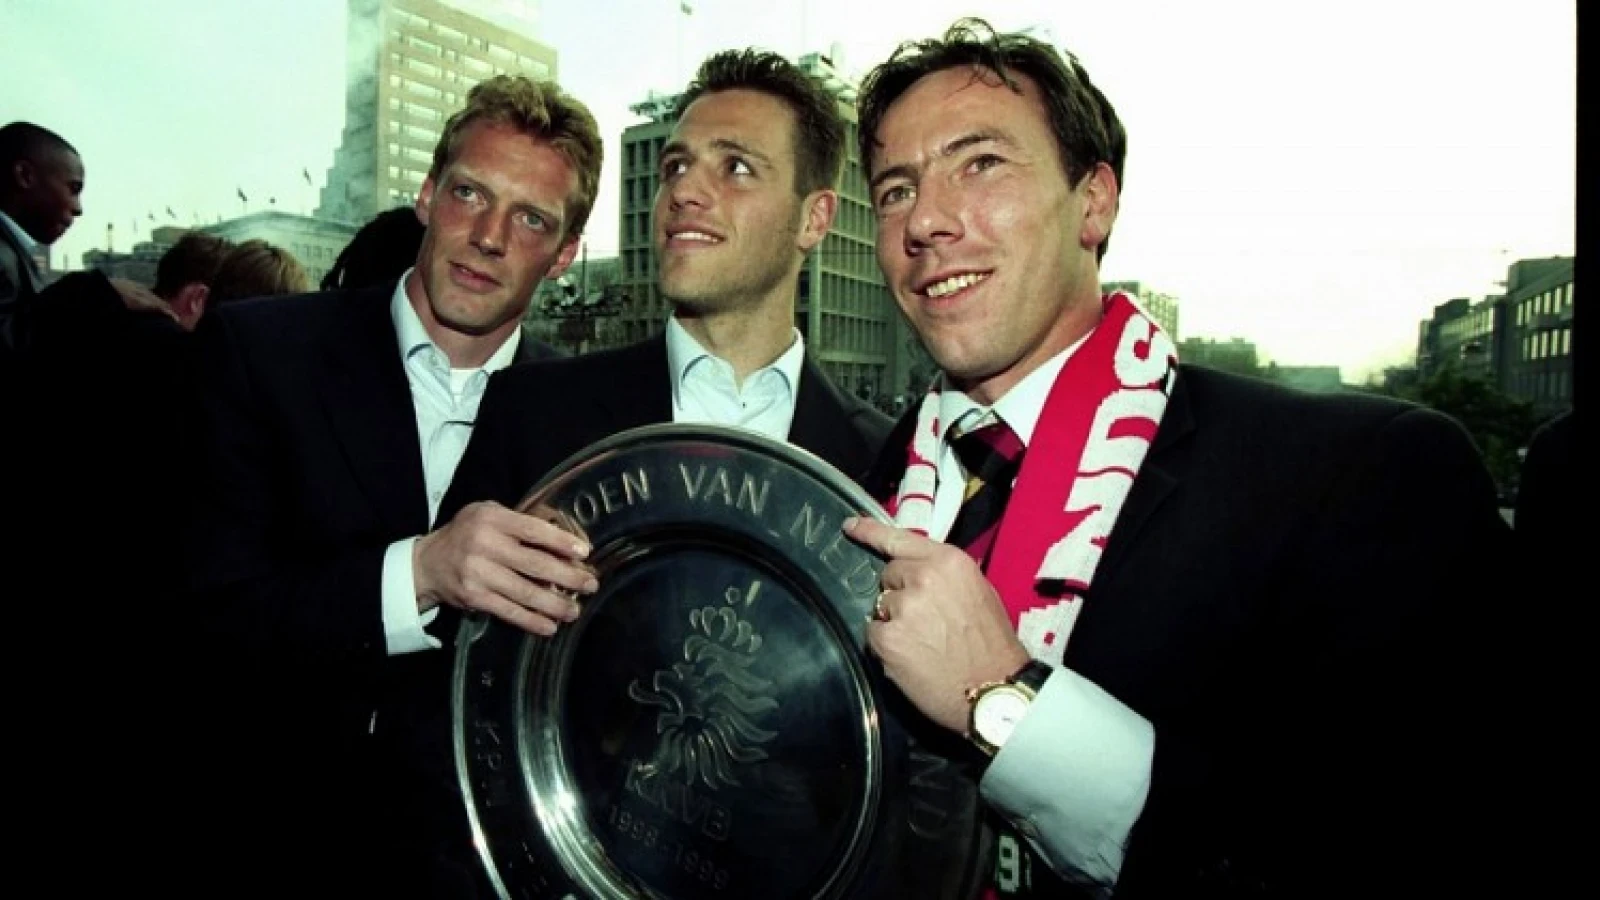 Kampioensschaal uitgereikt door speler van Feyenoord uit kampioensploeg 1999